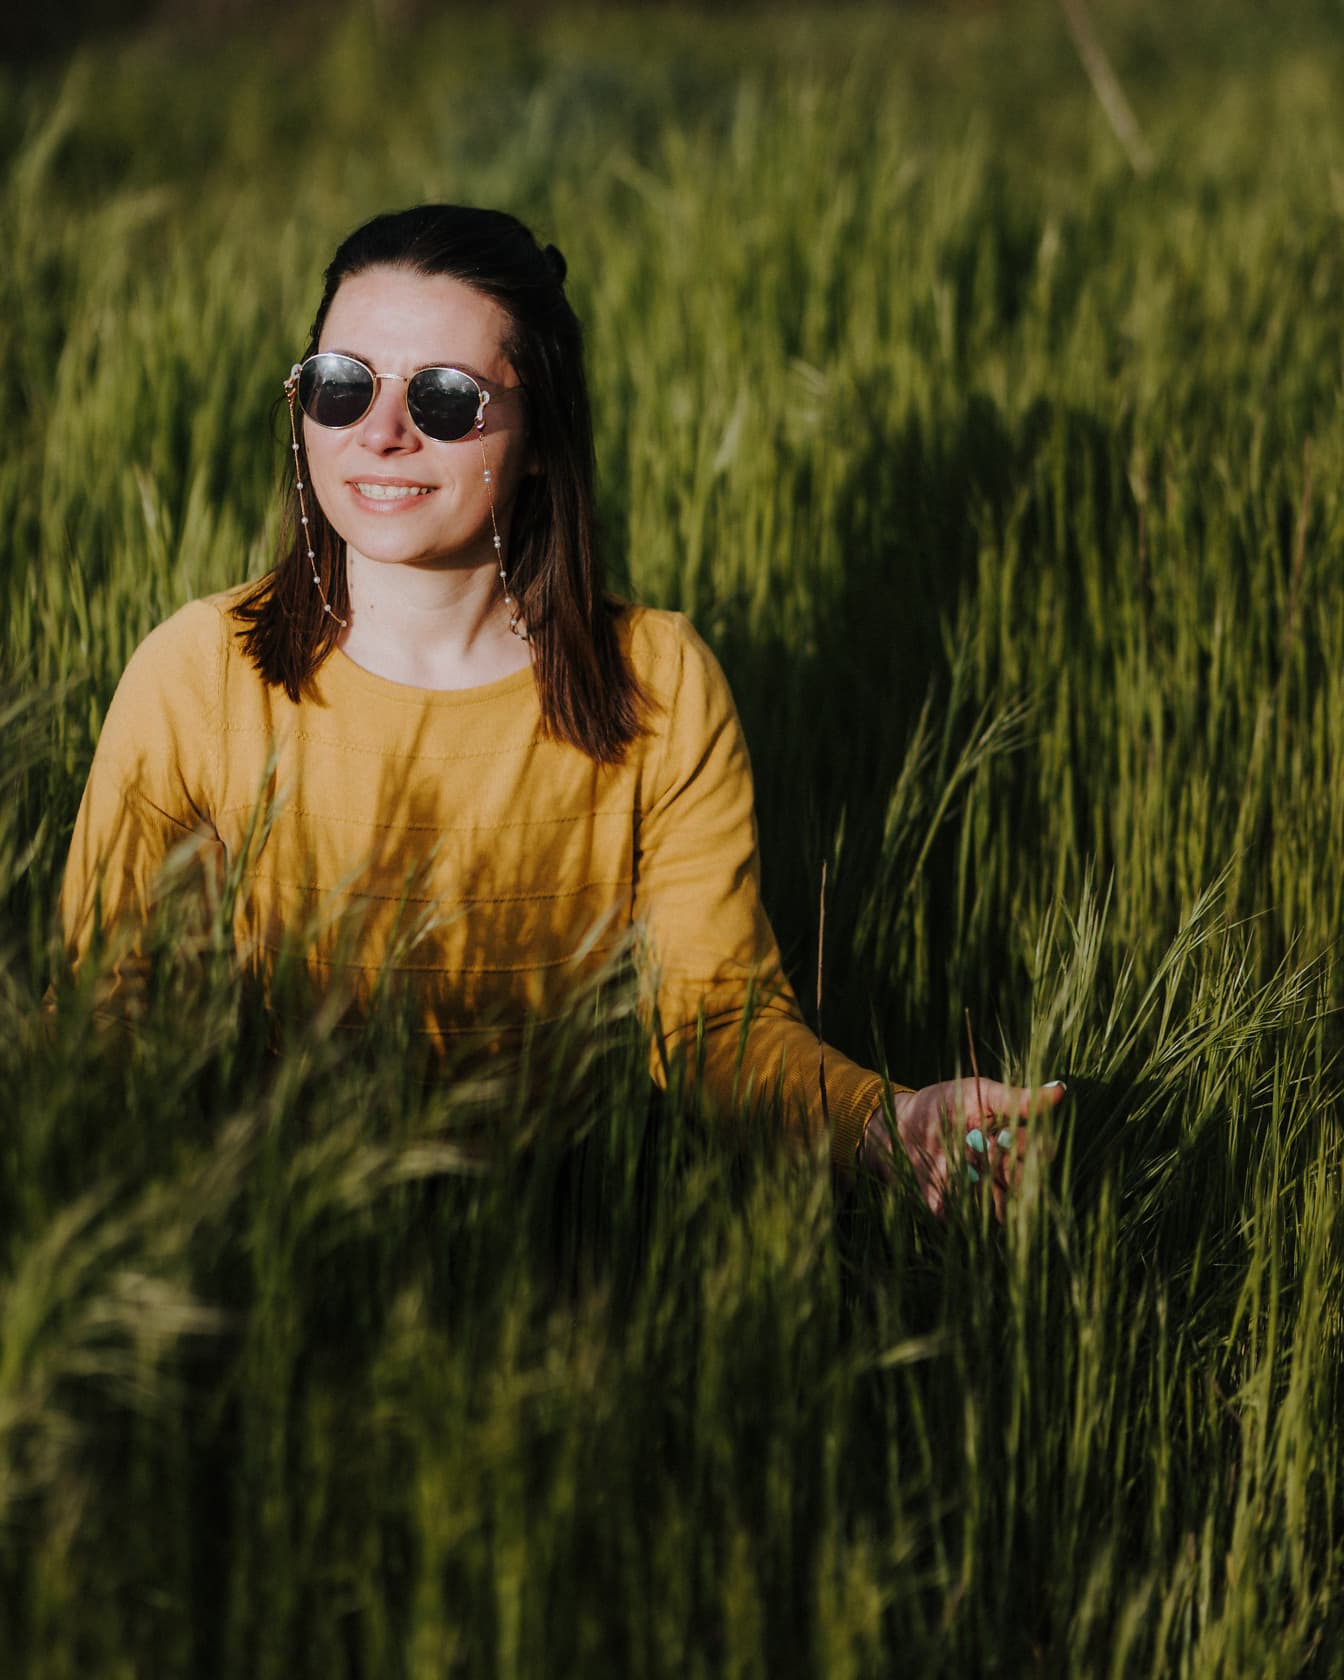 Mulher alegre sorrindo no campo de trigo verde no dia ensolarado